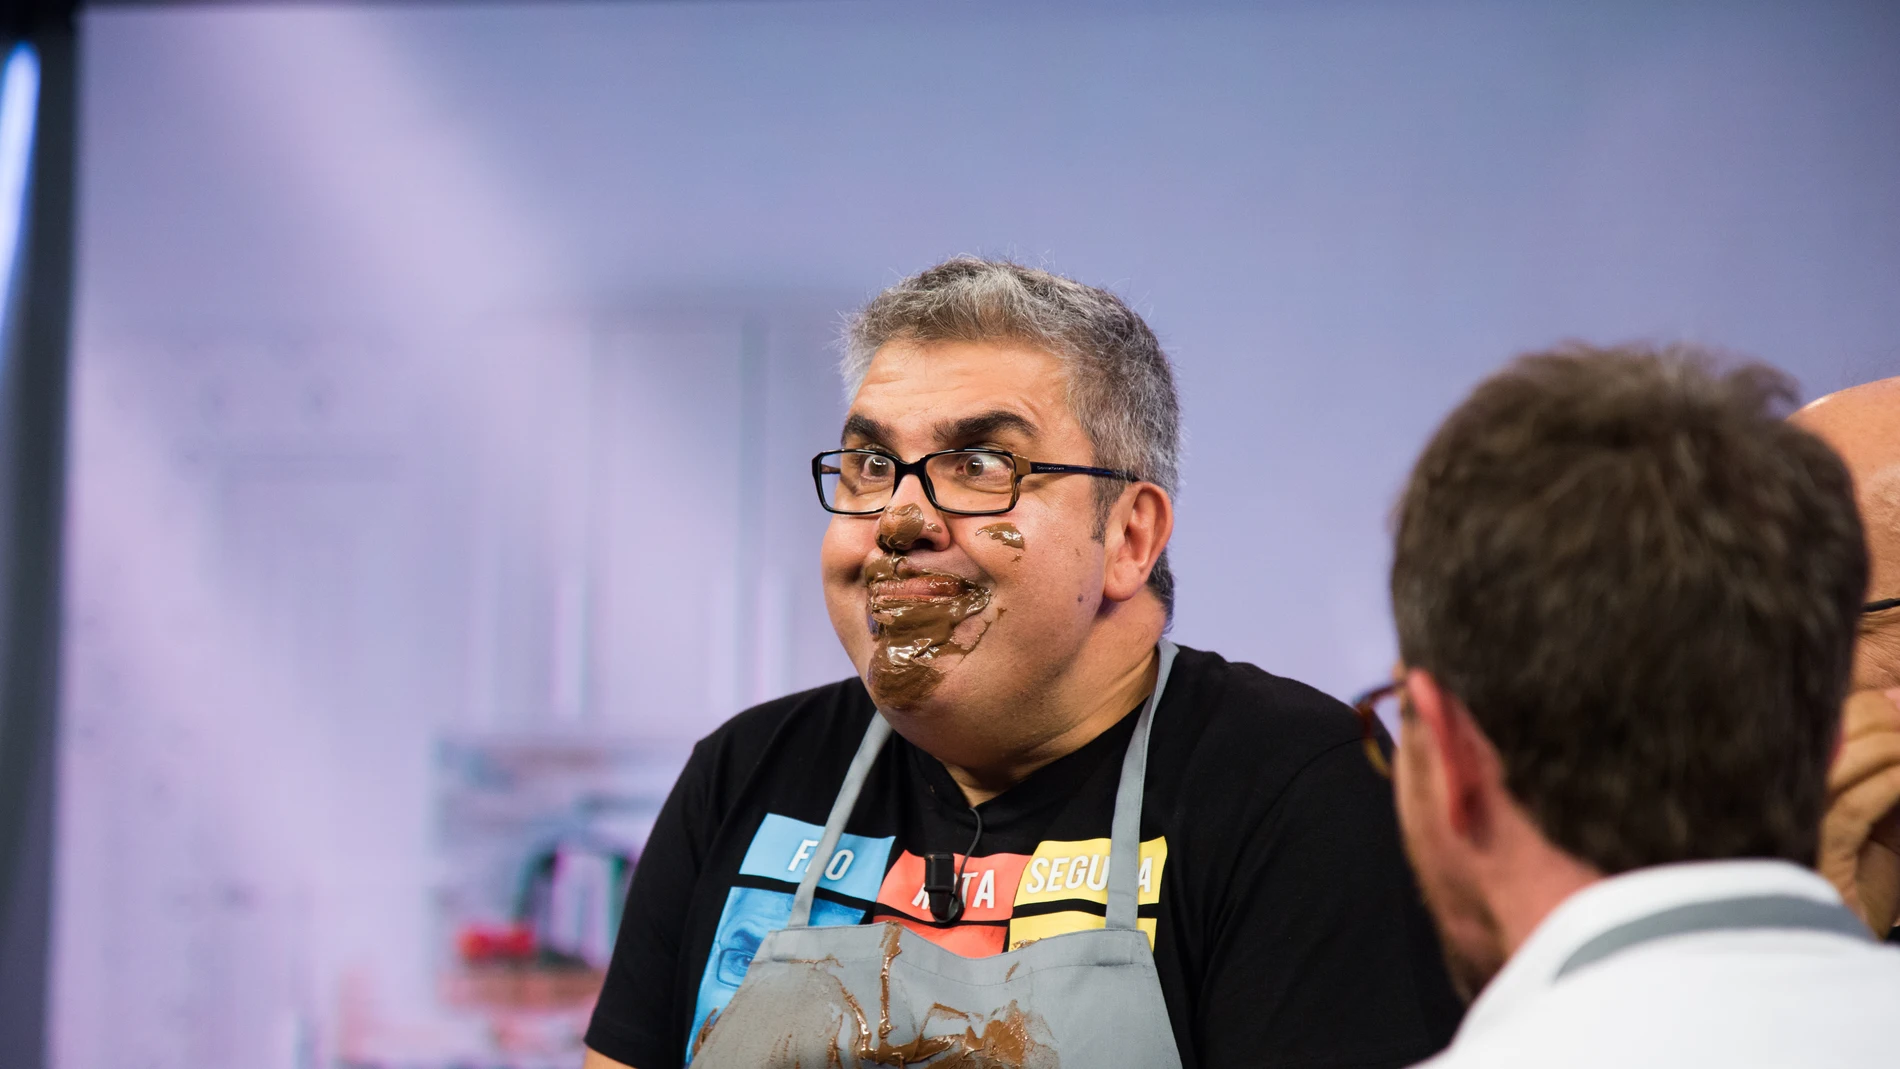 Santiago Segura, José Mota y Florentino Fernández se bañan en chocolate en ‘El Hormiguero 3.0’